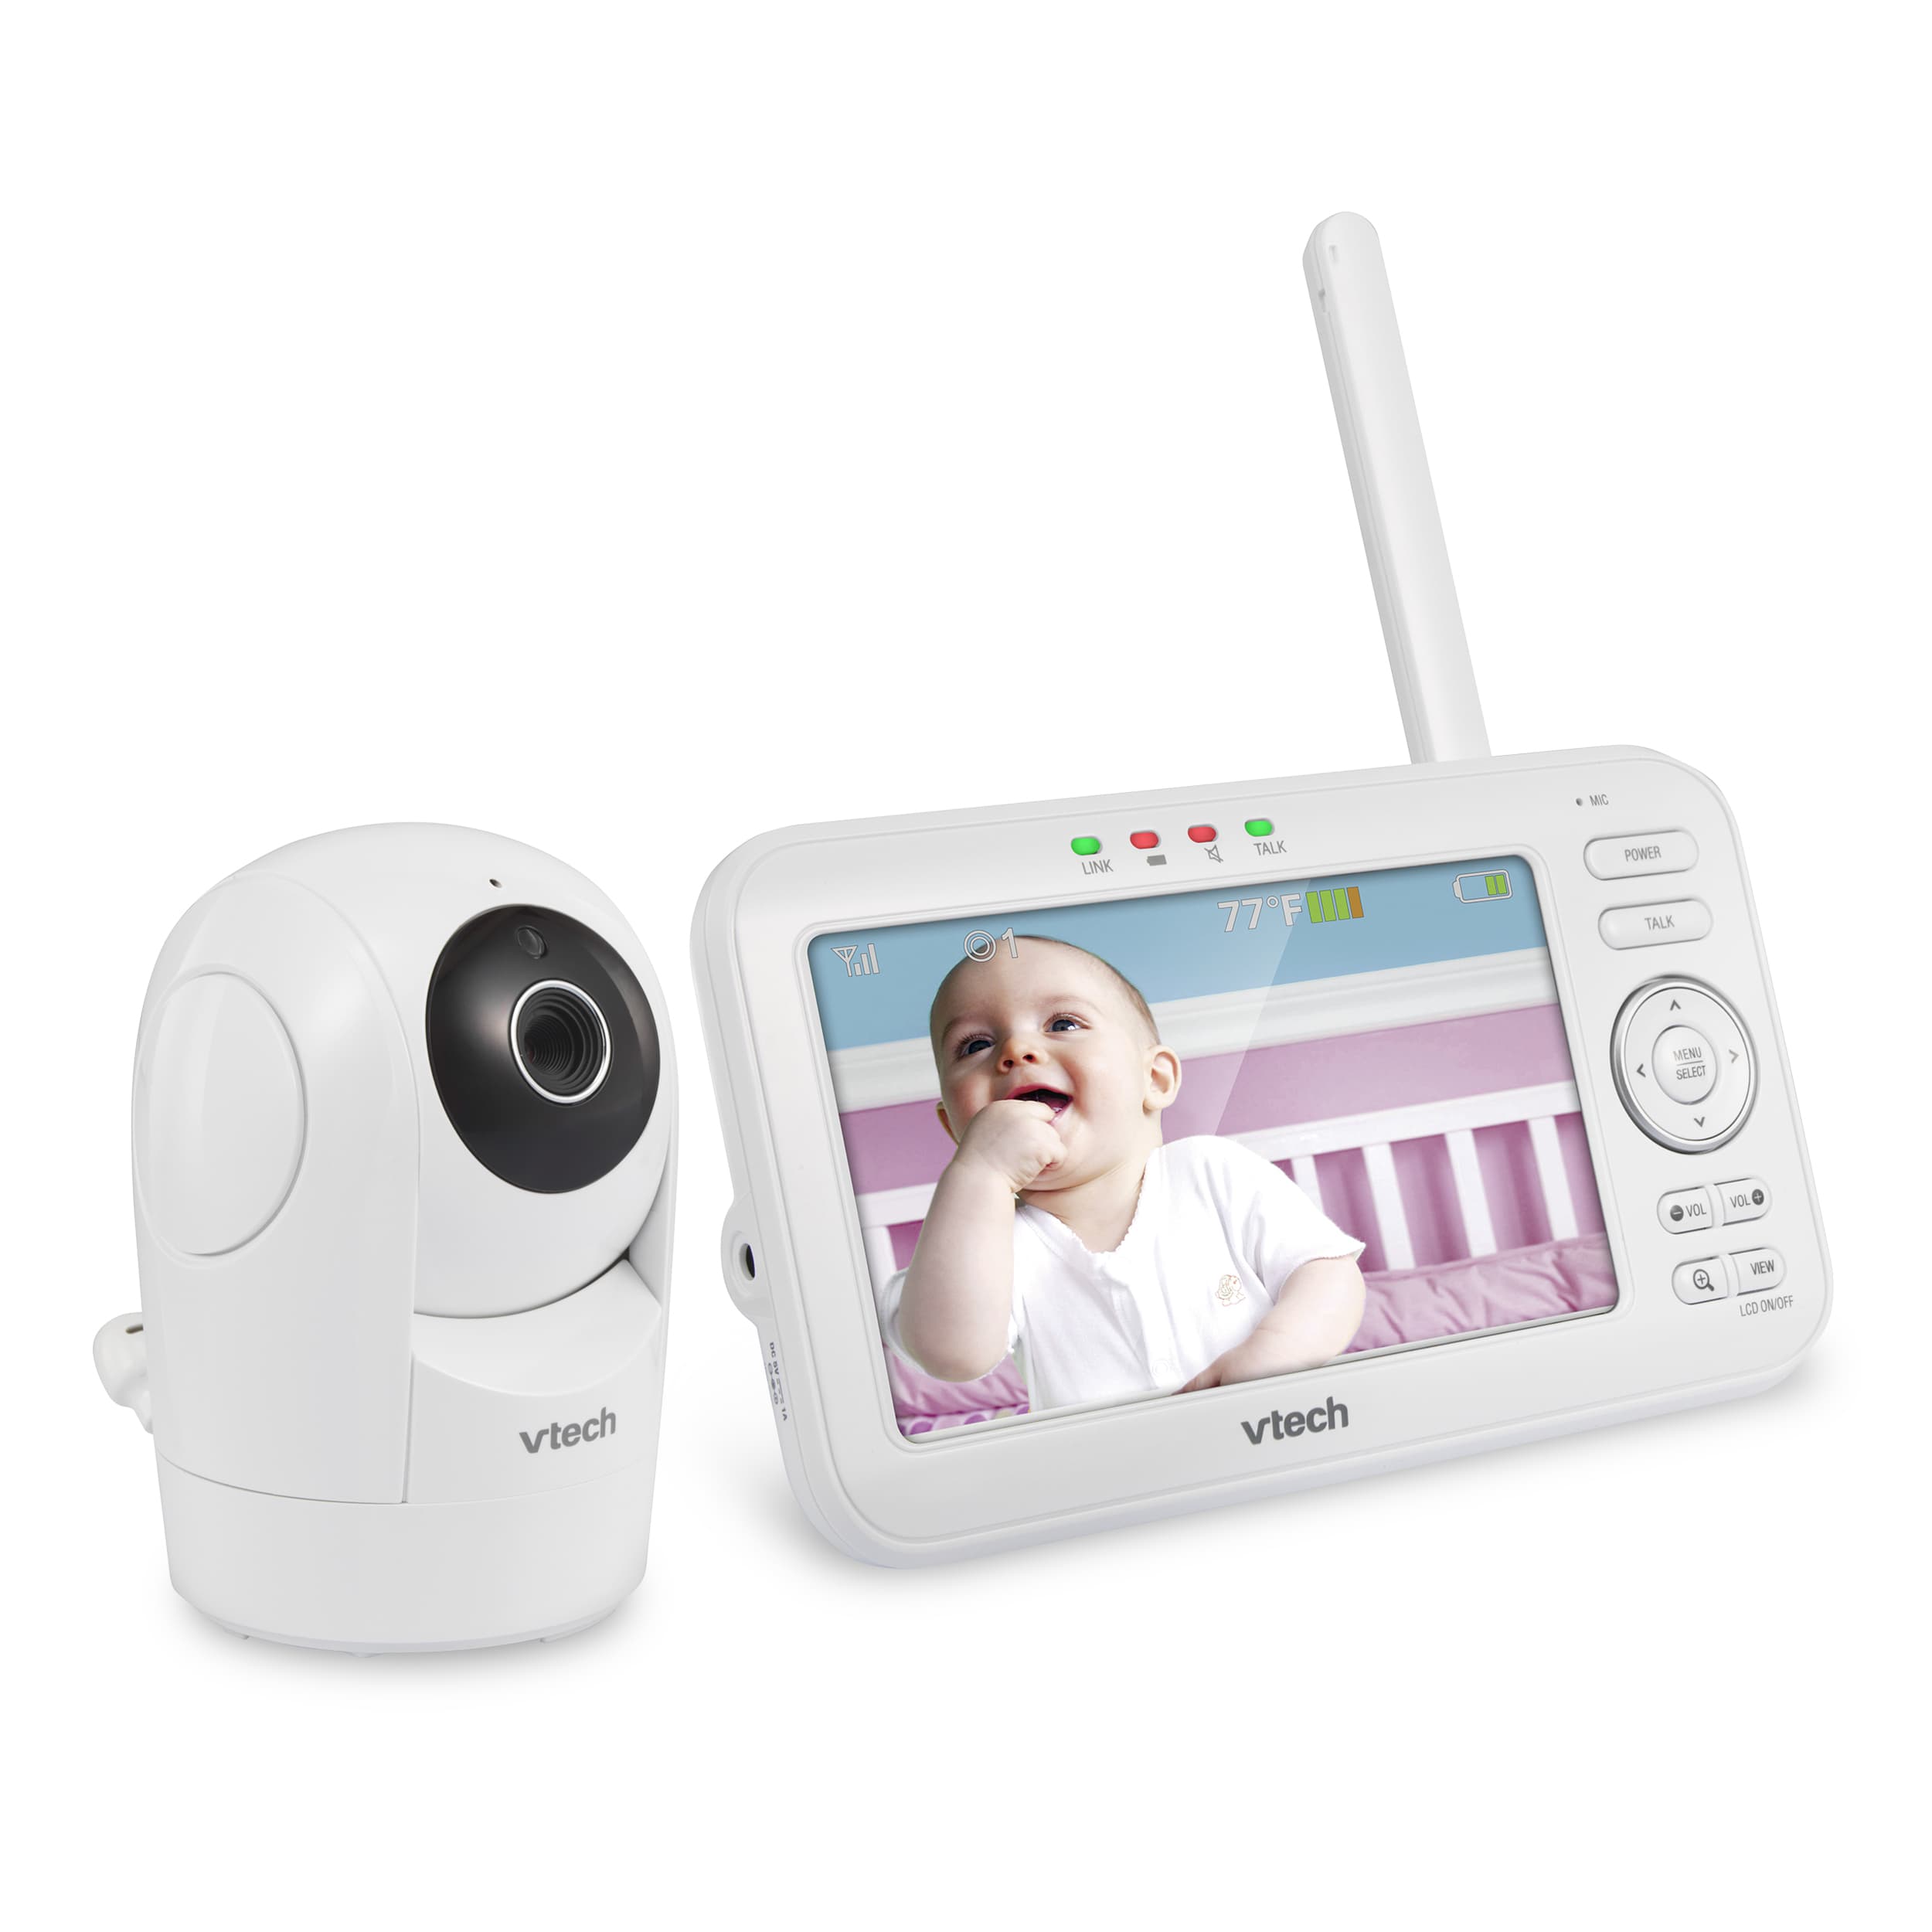 vtech 5251 baby monitor